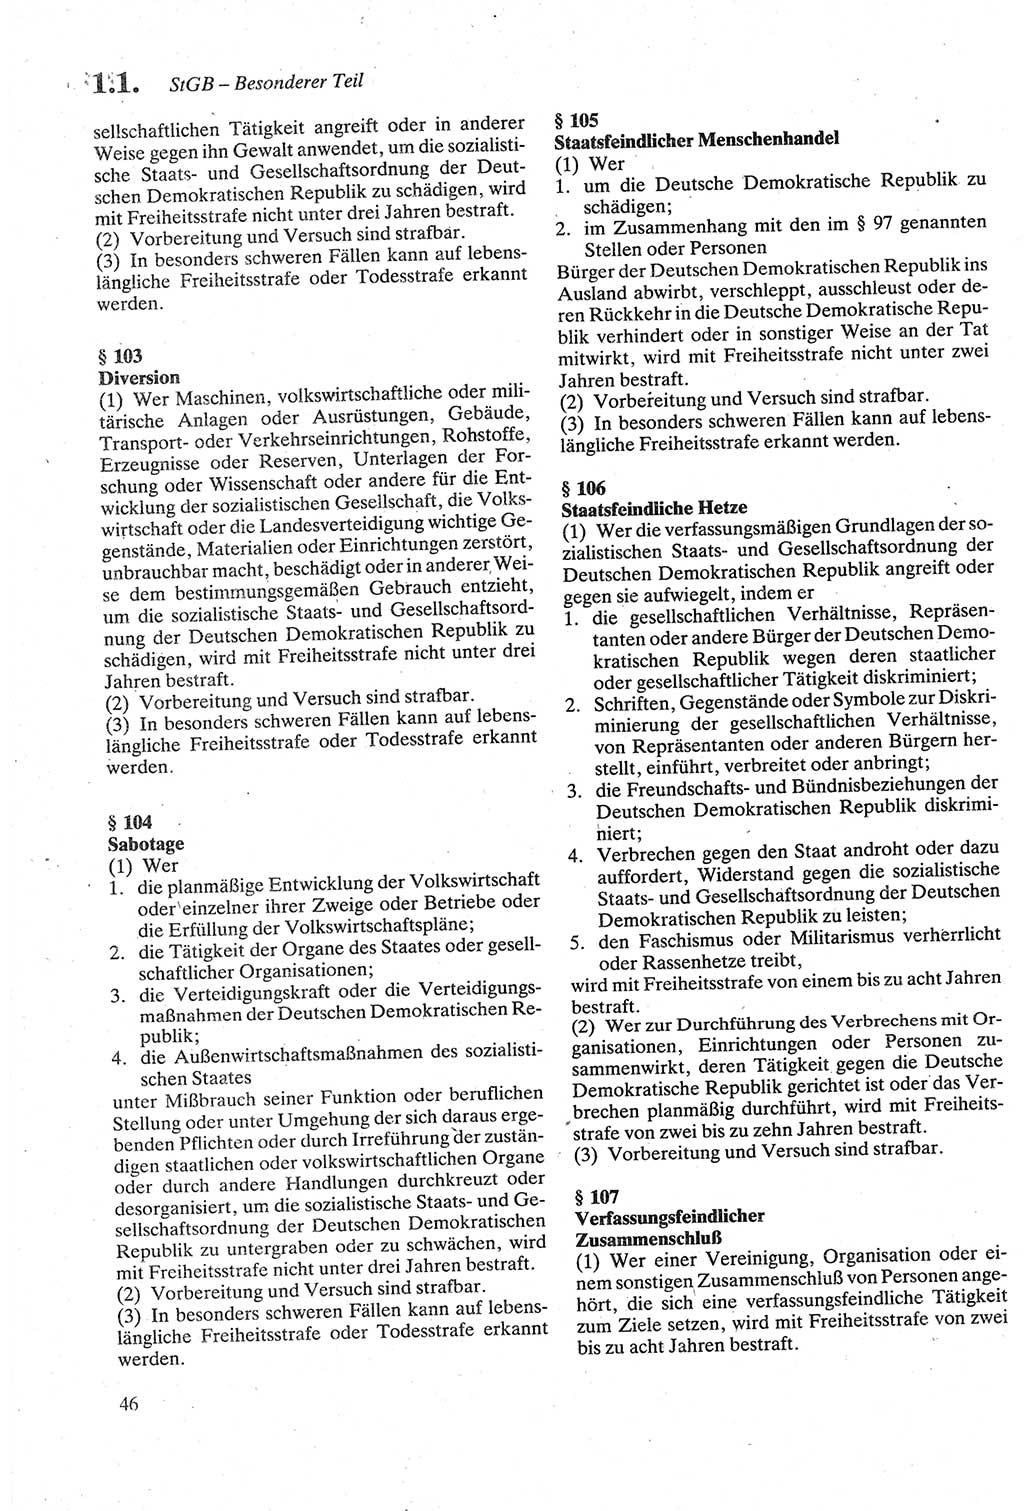 Strafgesetzbuch (StGB) der Deutschen Demokratischen Republik (DDR) sowie angrenzende Gesetze und Bestimmungen 1979, Seite 46 (StGB DDR Ges. Best. 1979, S. 46)